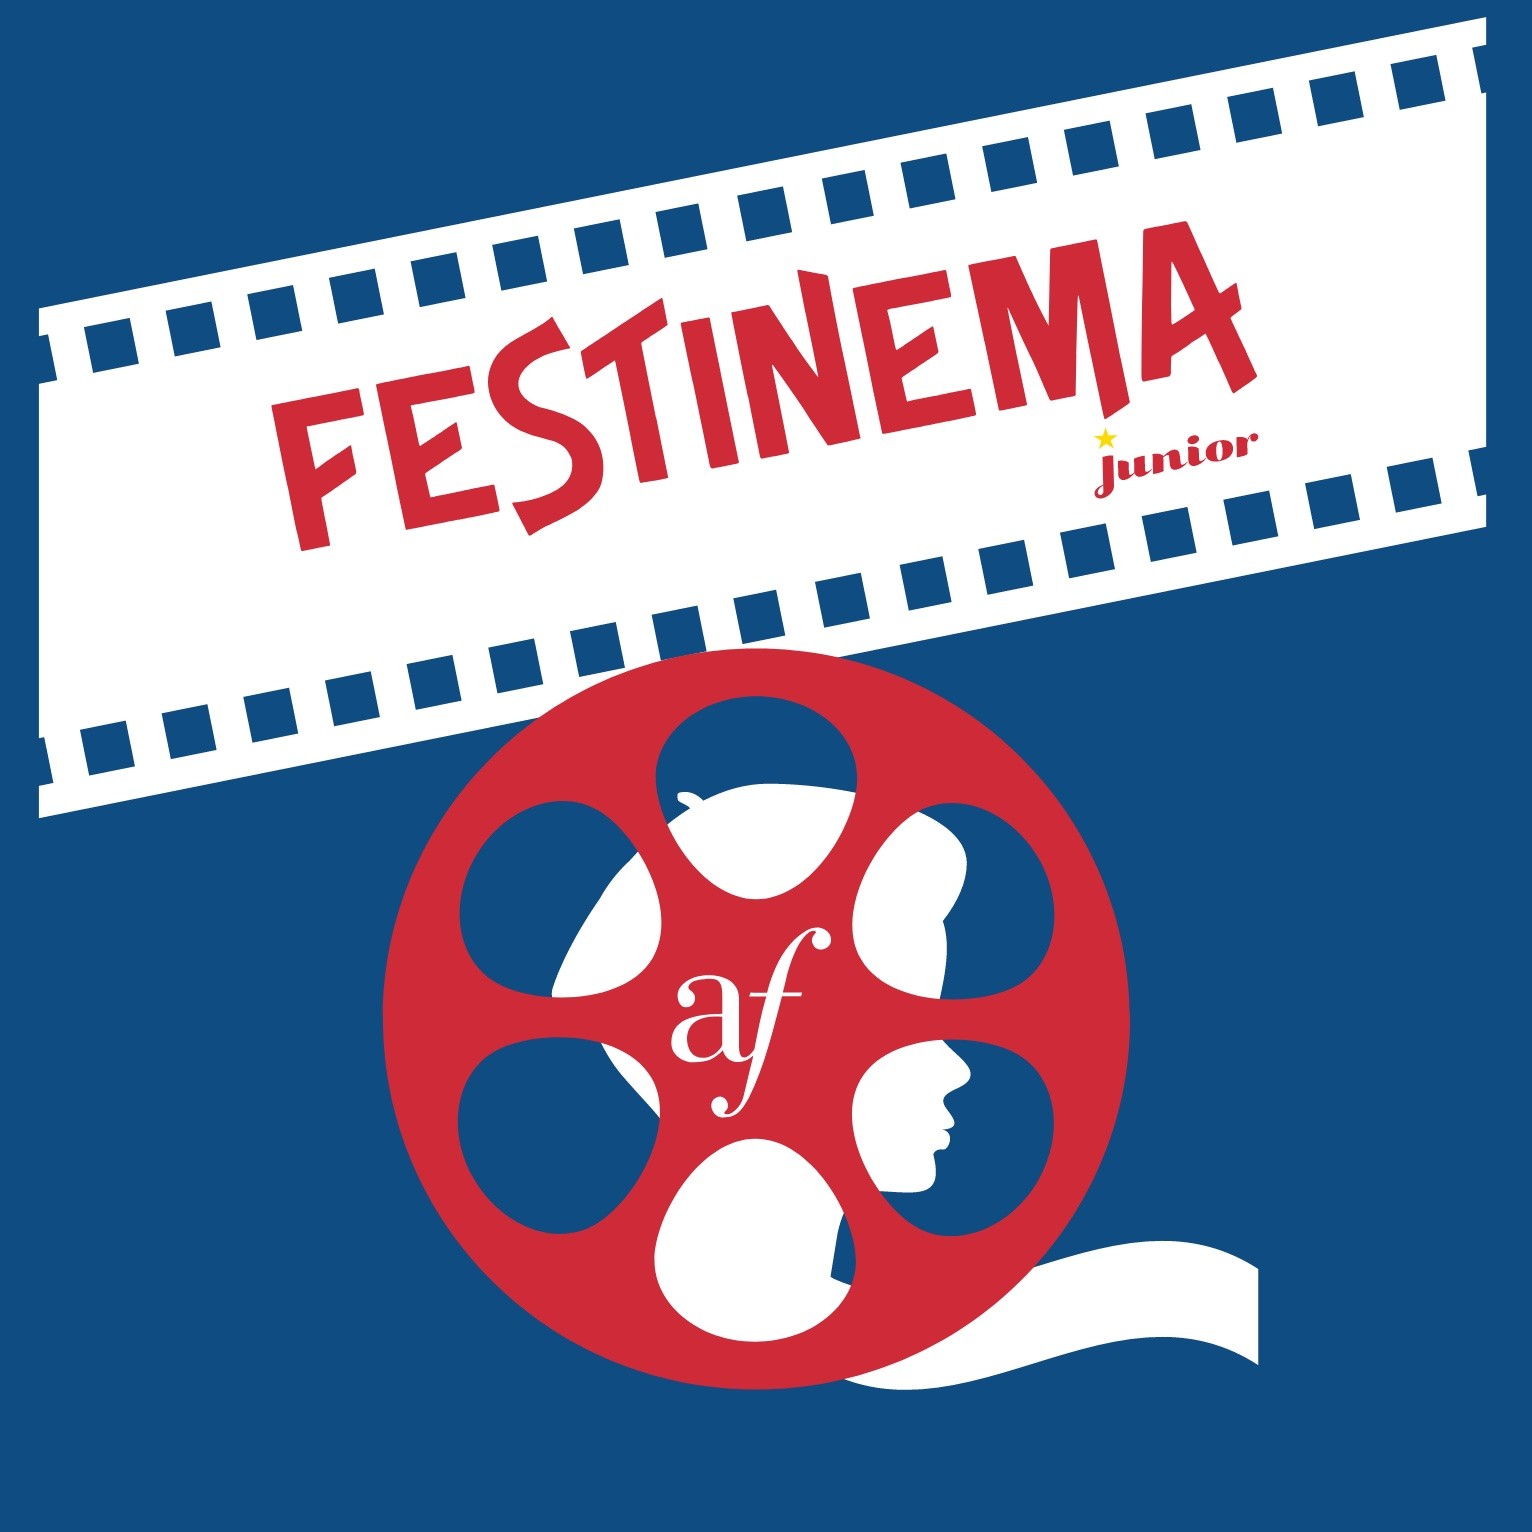 FILM FESTIVAL - FESTINEMA JUNIOR